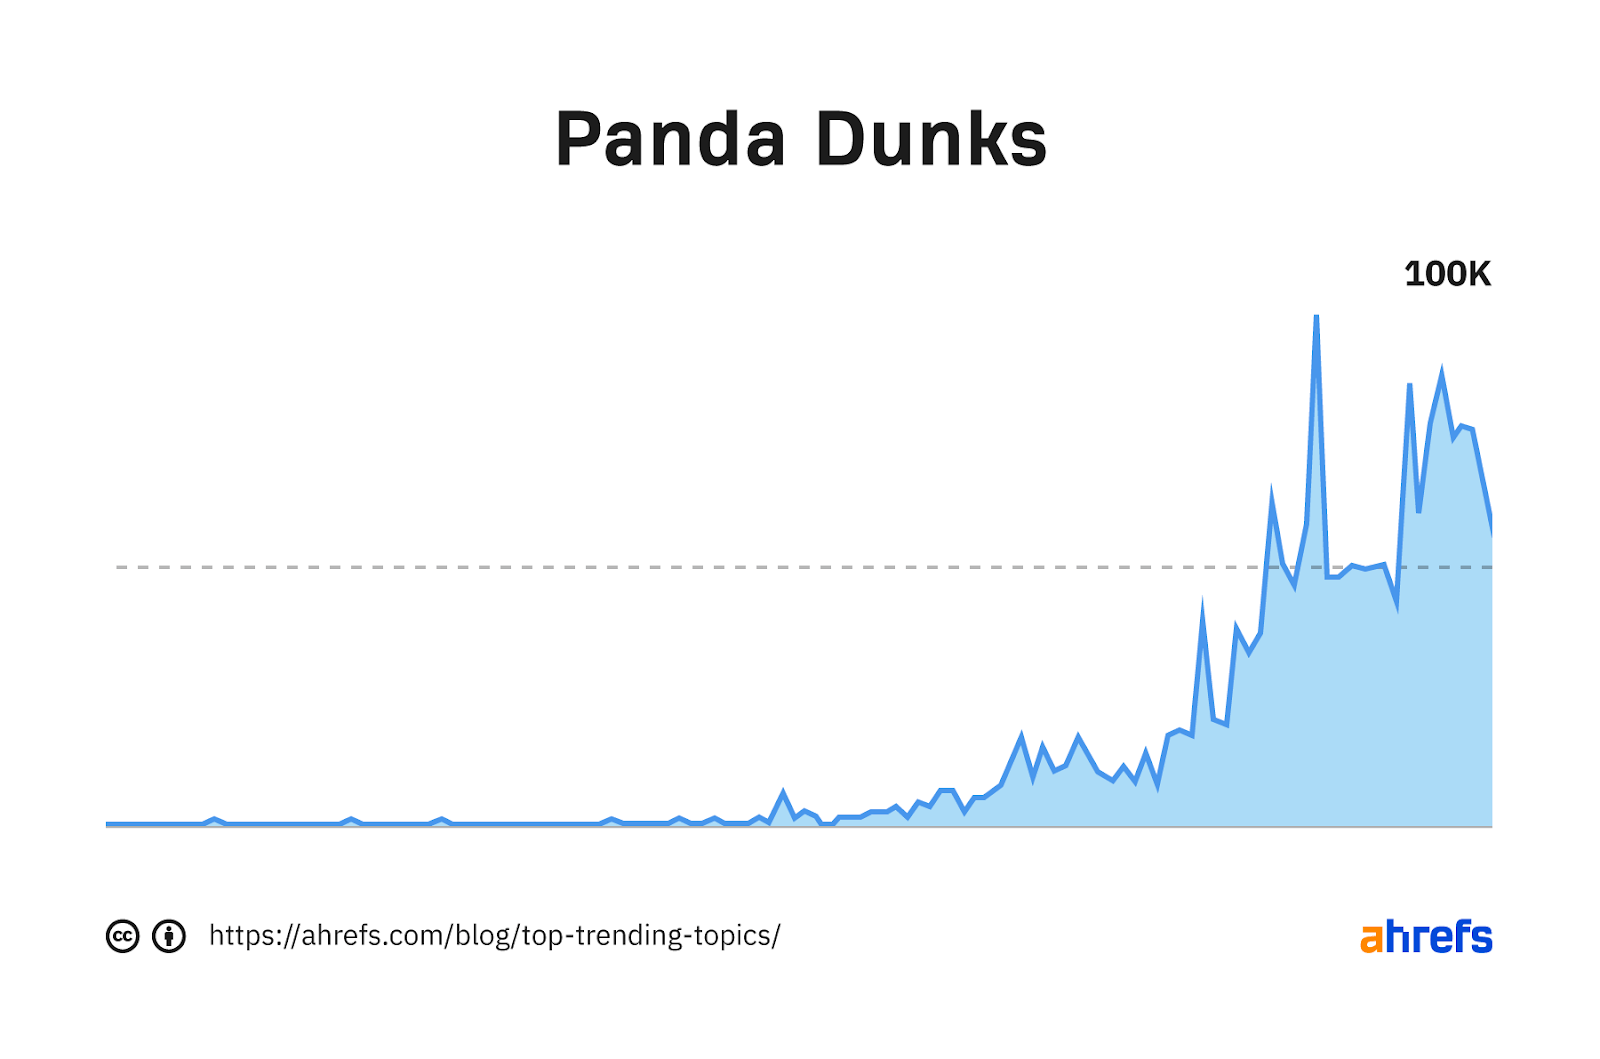 Gráfico de tendencia de la palabra clave "mojada panda"